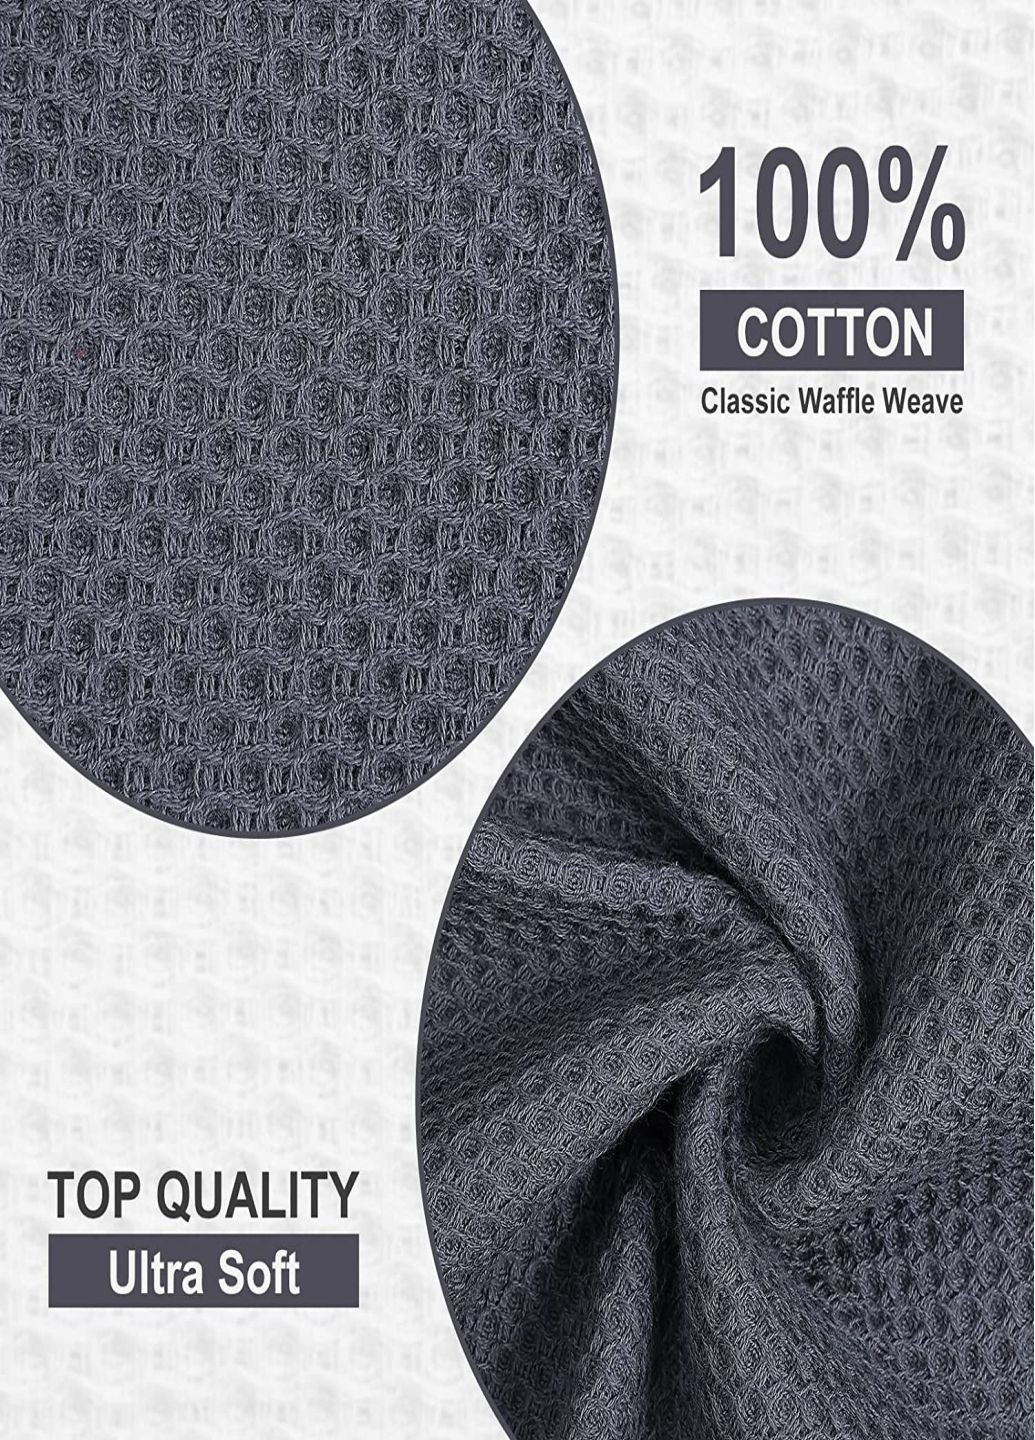 Aquarius набор кухонных полотенец из 100% хлопка - вафельные салфетки для кухни 34*34 см 6 шт серый серый производство - Китай